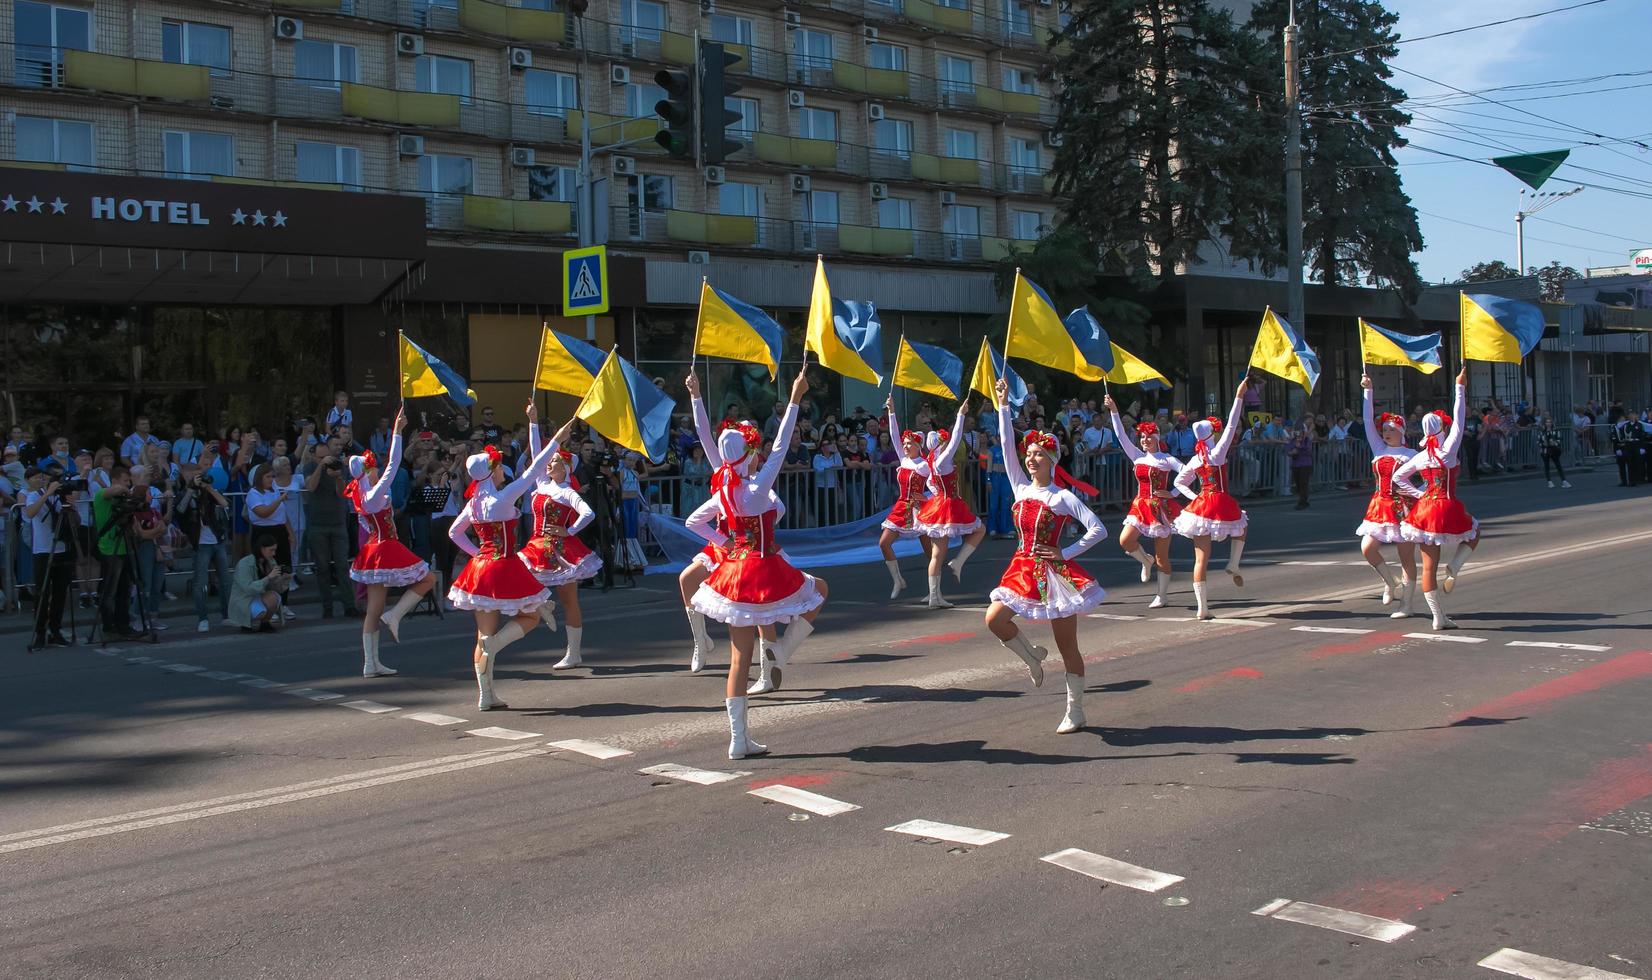 dnipro, ukraina - 09.11.2021 medborgare fira stad dag. flickor dansare med vinka flaggor av ukraina. foto